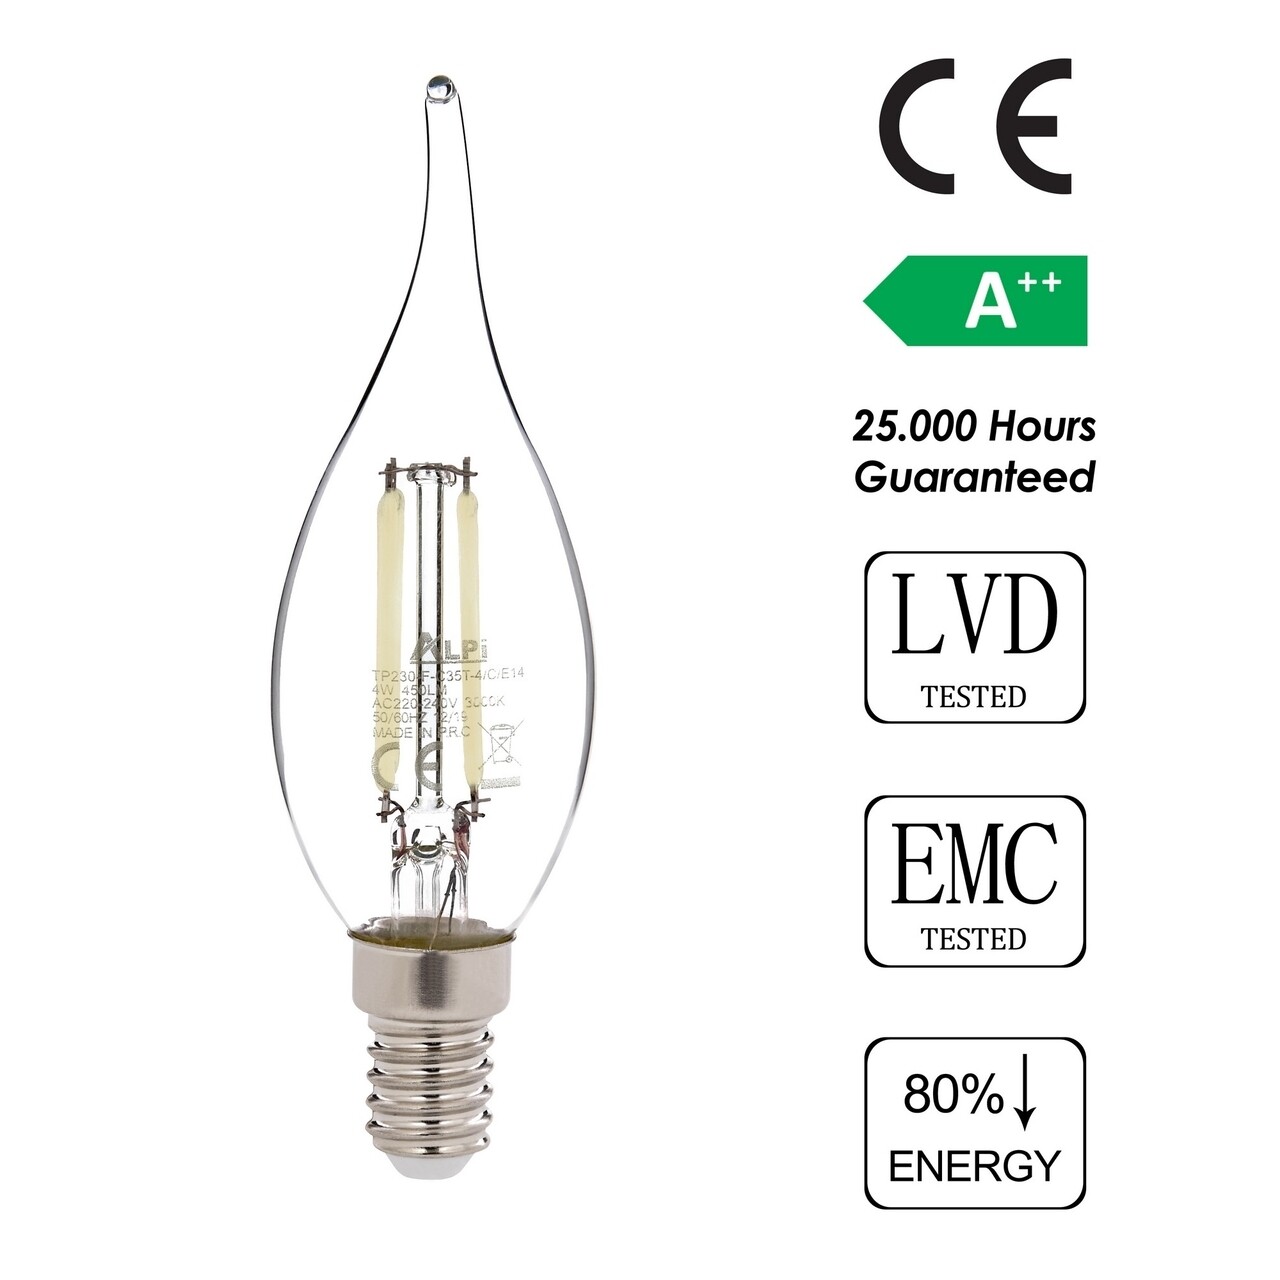 Bec LED, Sage, E14 Kıvrık - White, E14, 4 W, 6500K, 450 Lm, Sticla